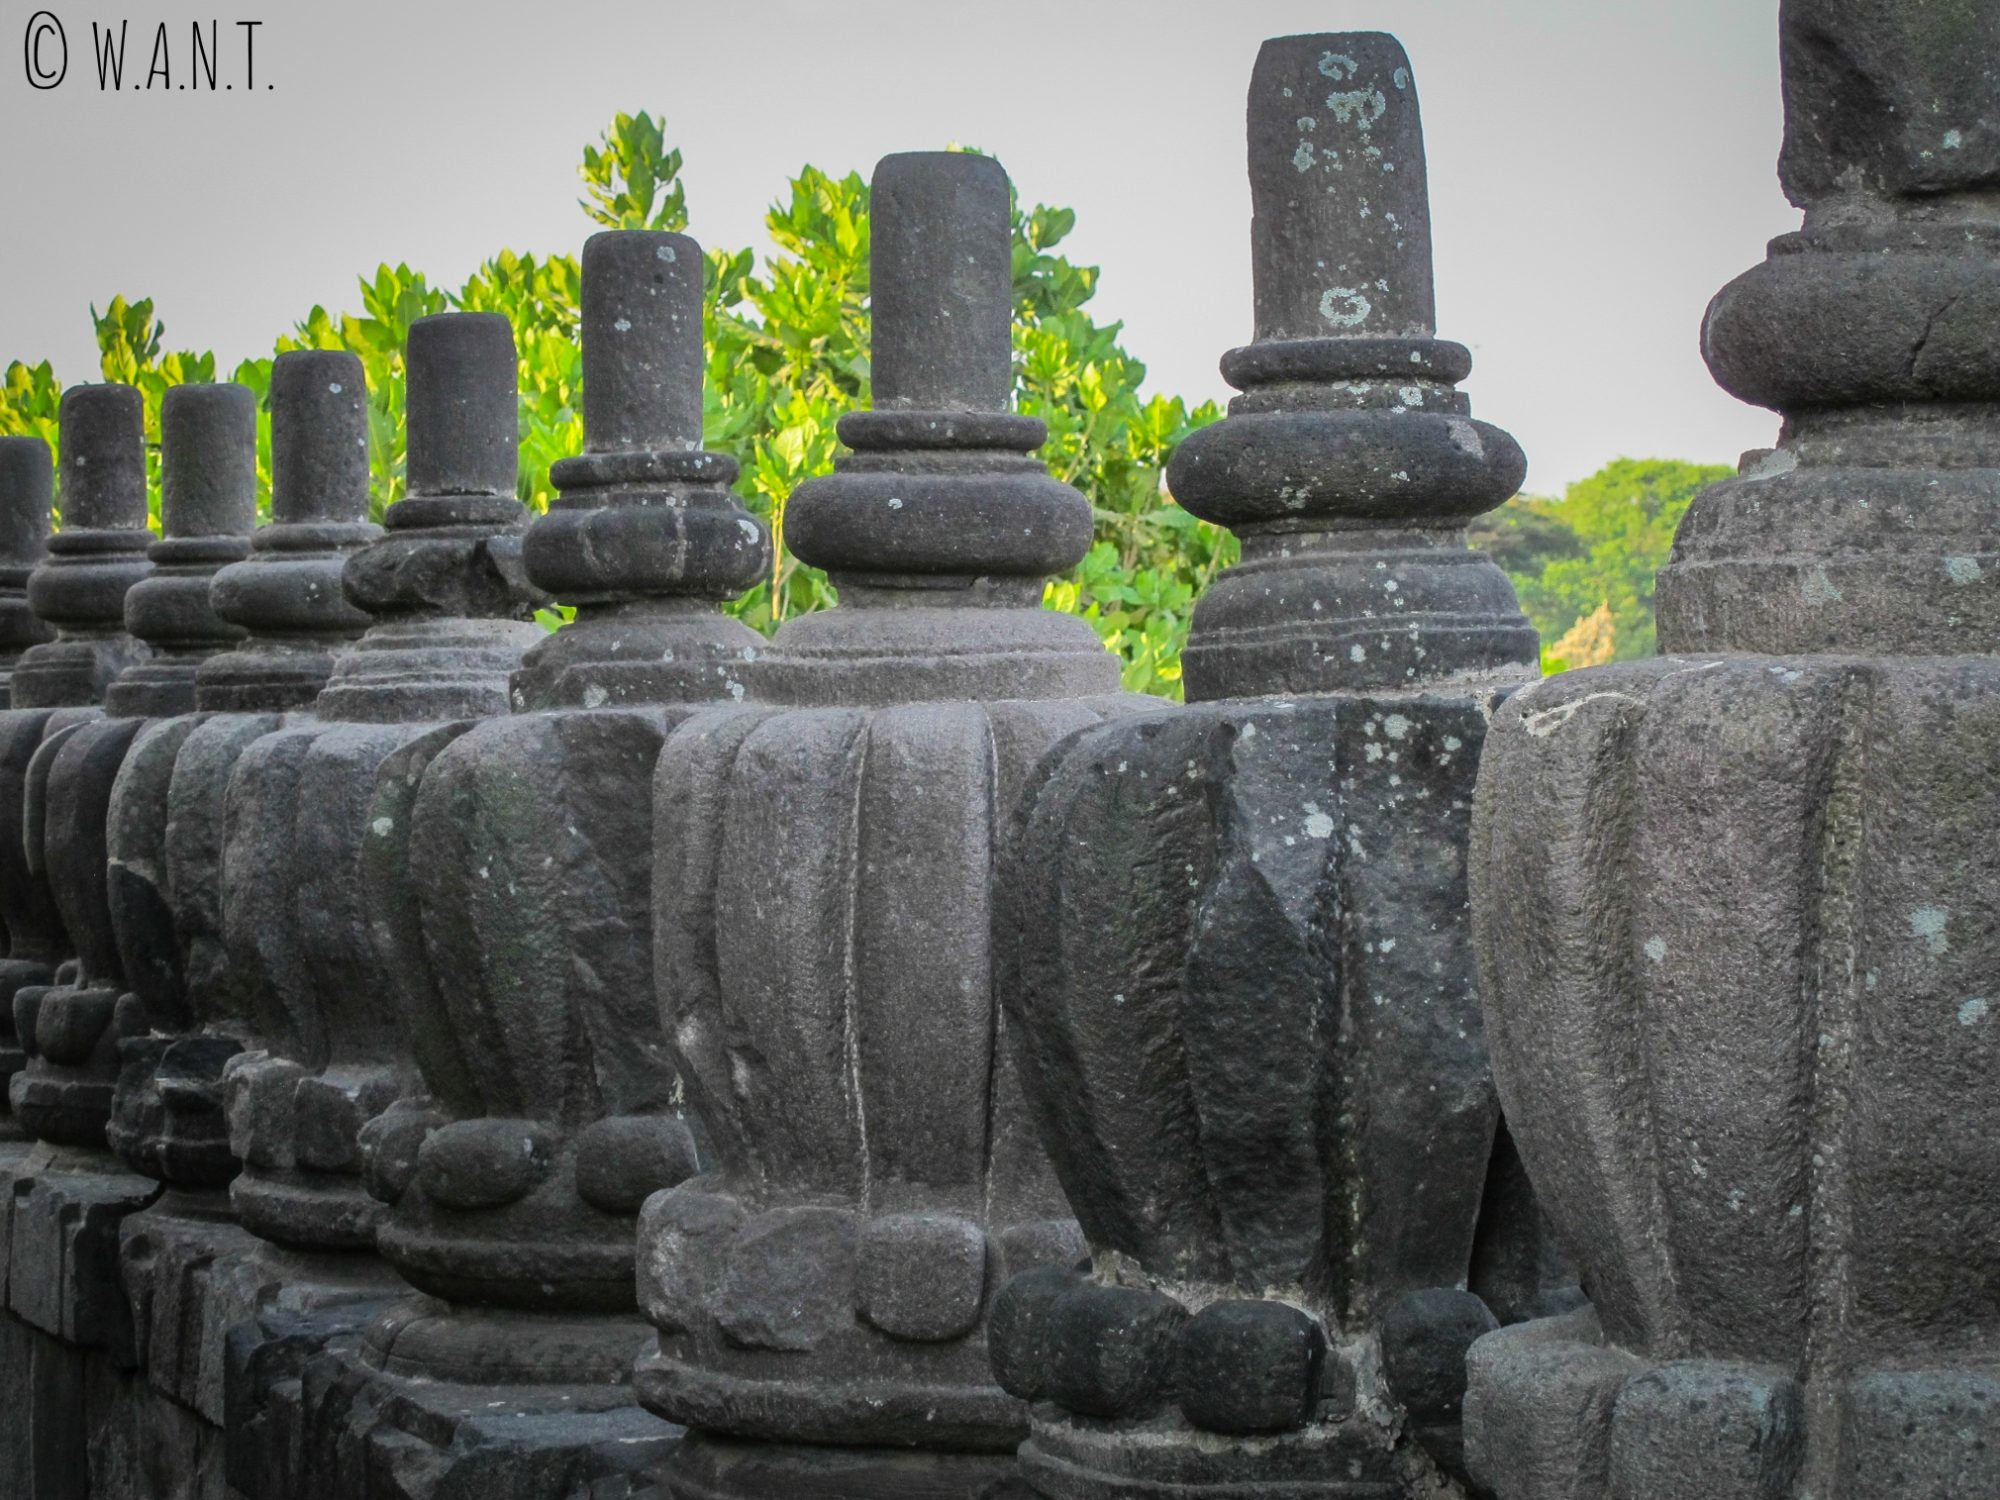 Ornements d'un des temples de Prambanan